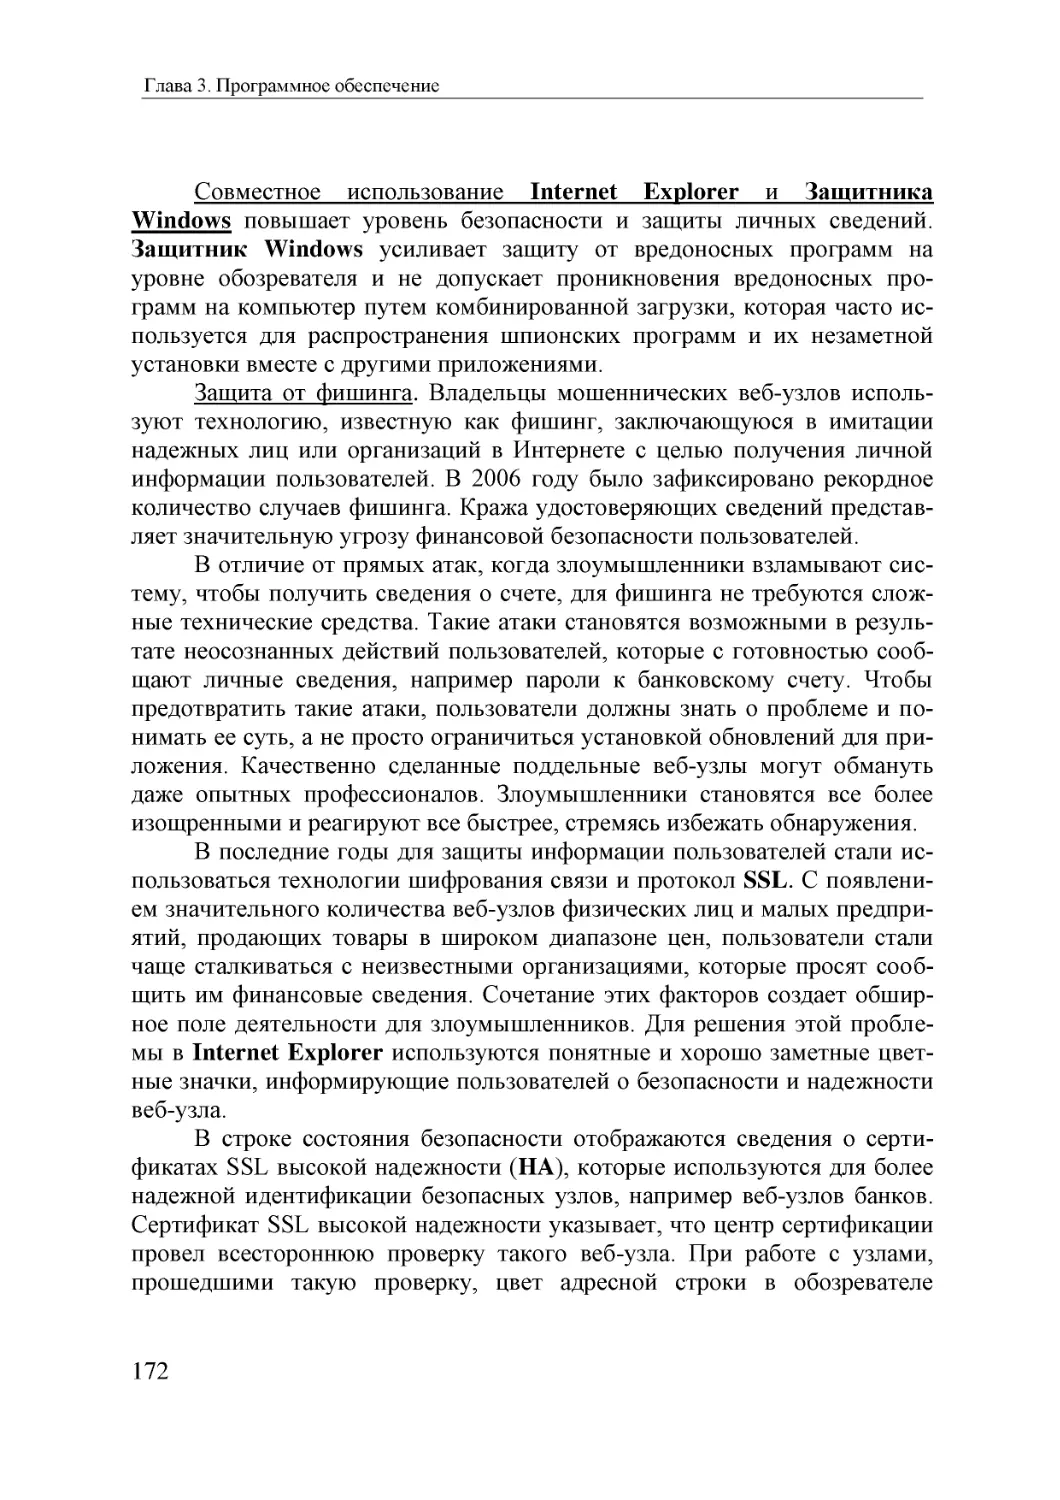 Informatika_Uchebnik_dlya_vuzov_2010 172